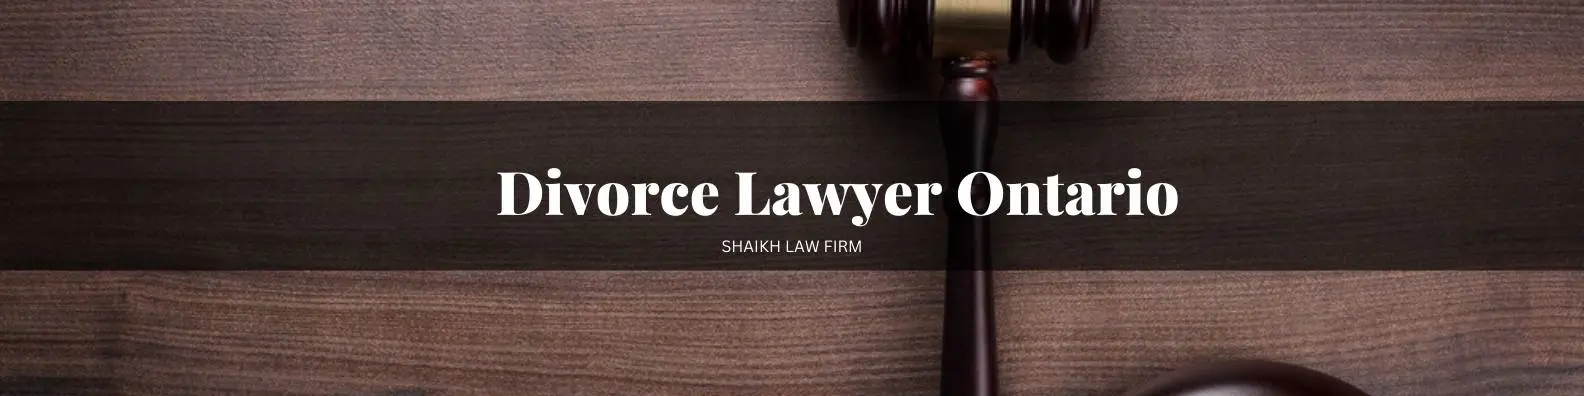 Divorce-Lawyer-Ontario